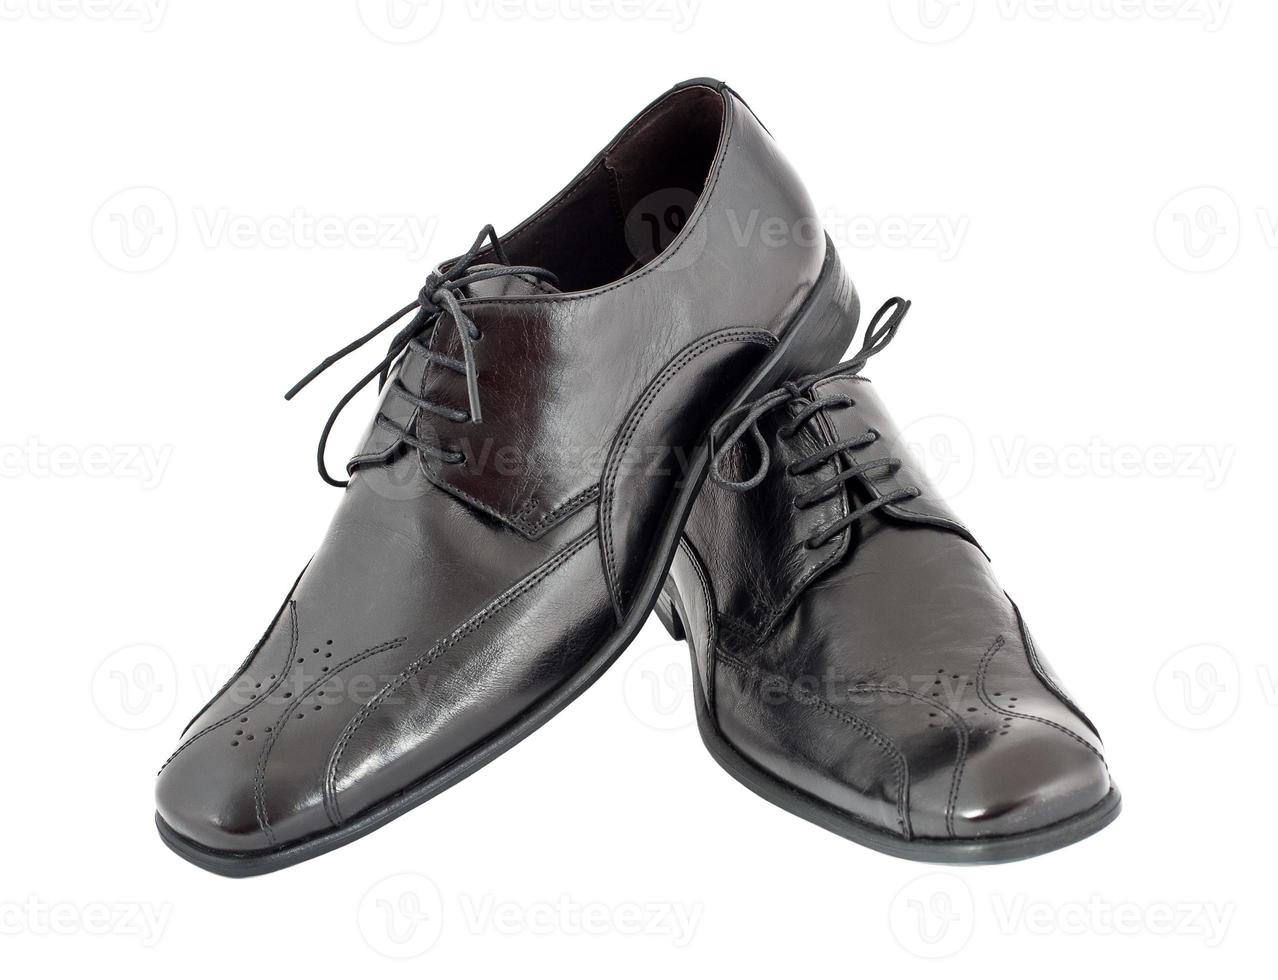 The black men's shoes photo